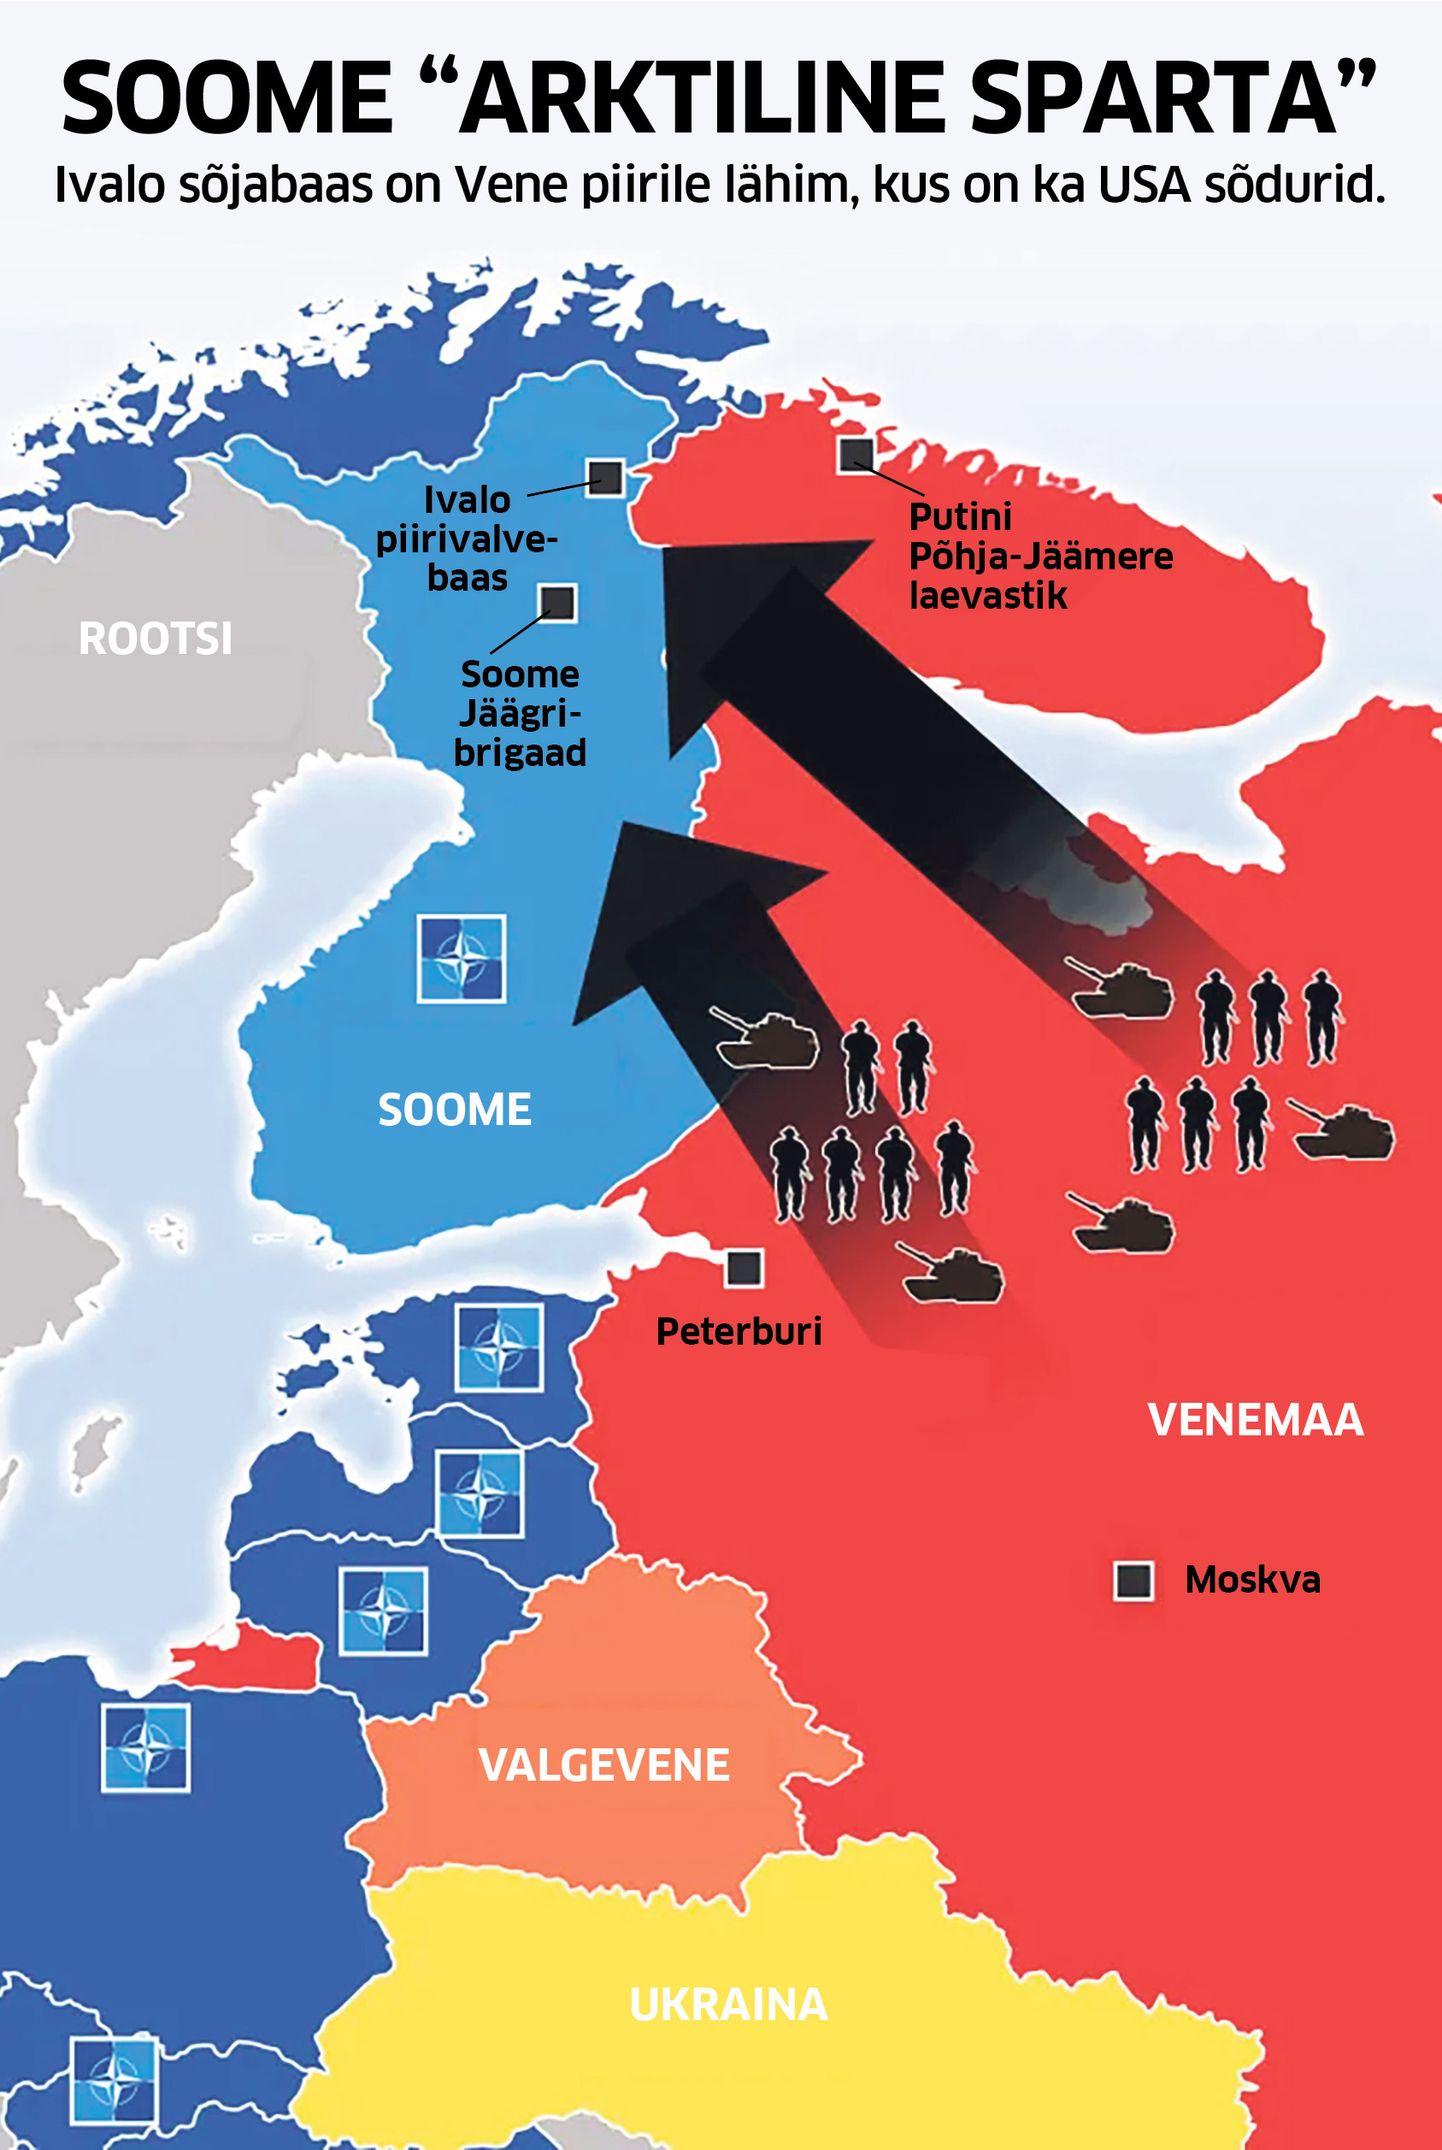 Pekka Toveri on veendunud, et tema kaasmaalastel tuleb tagasi tõrjuda Venemaa pealetung, sest Moskva kavatseb NATO-t rünnata just Arktikas.